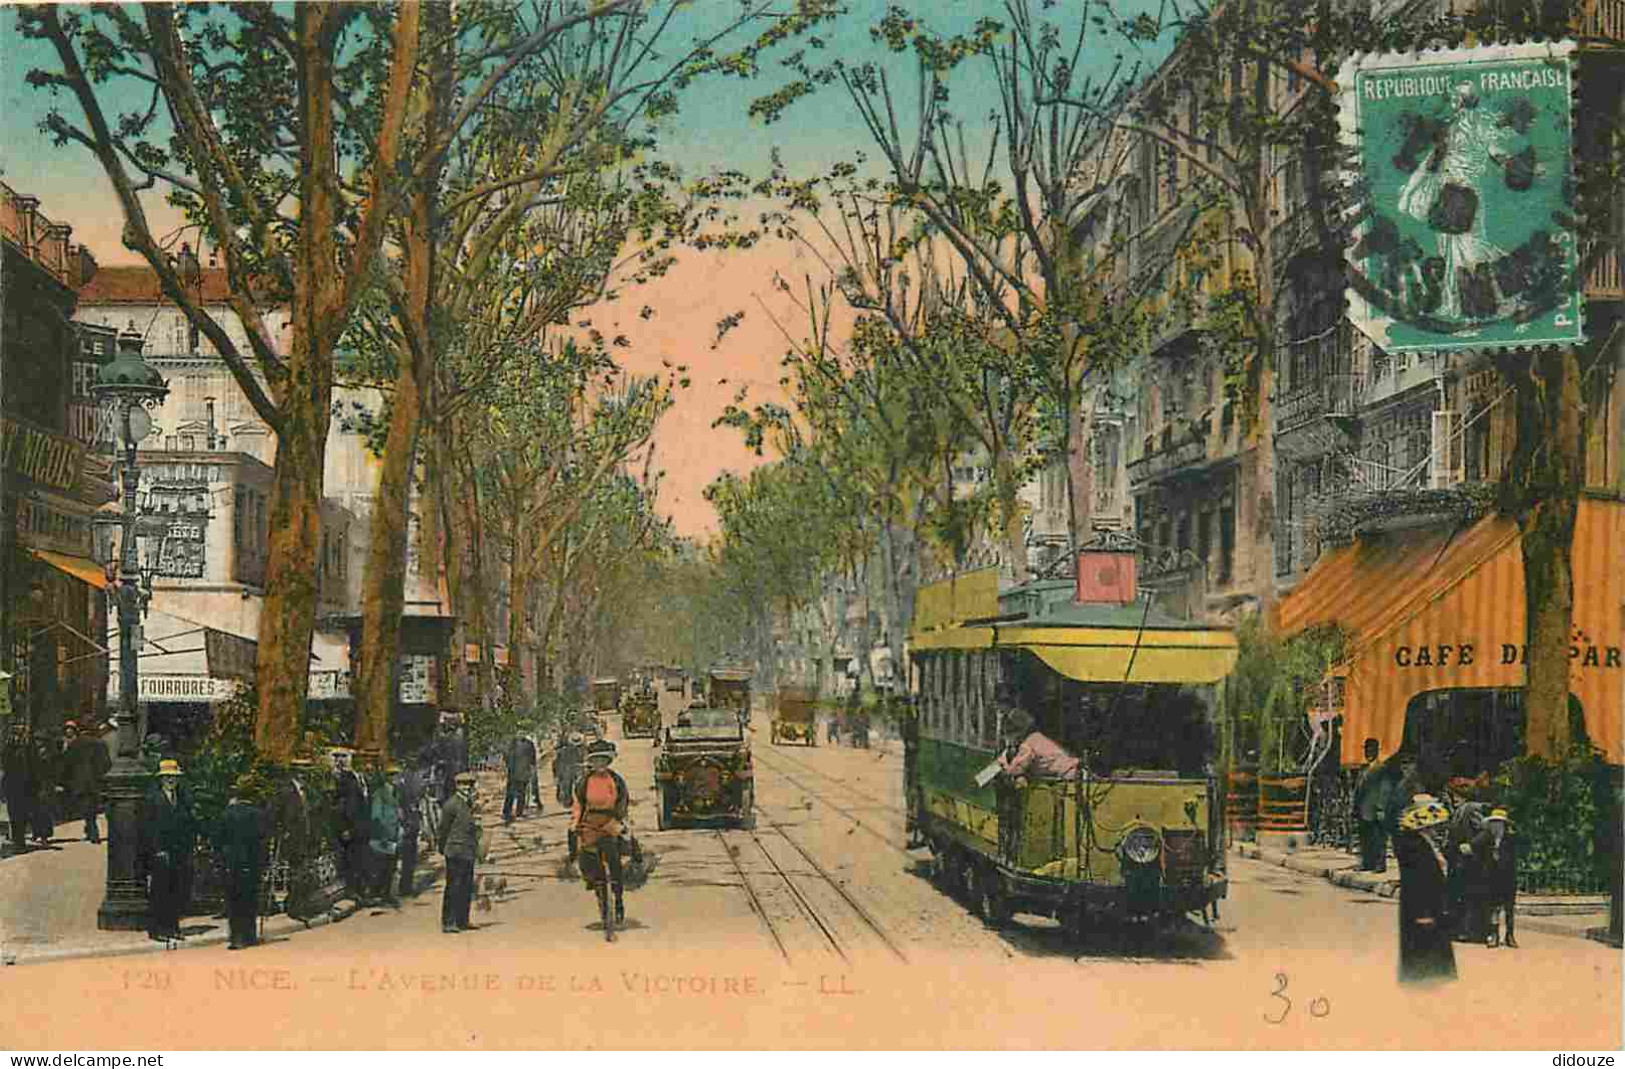 06 - Nice - Avenue De La Victoire - Animée - Tramway - Colorisée - Correspondance - CPA - Oblitération Ronde De 1922 - V - Tráfico Rodado - Auto, Bus, Tranvía